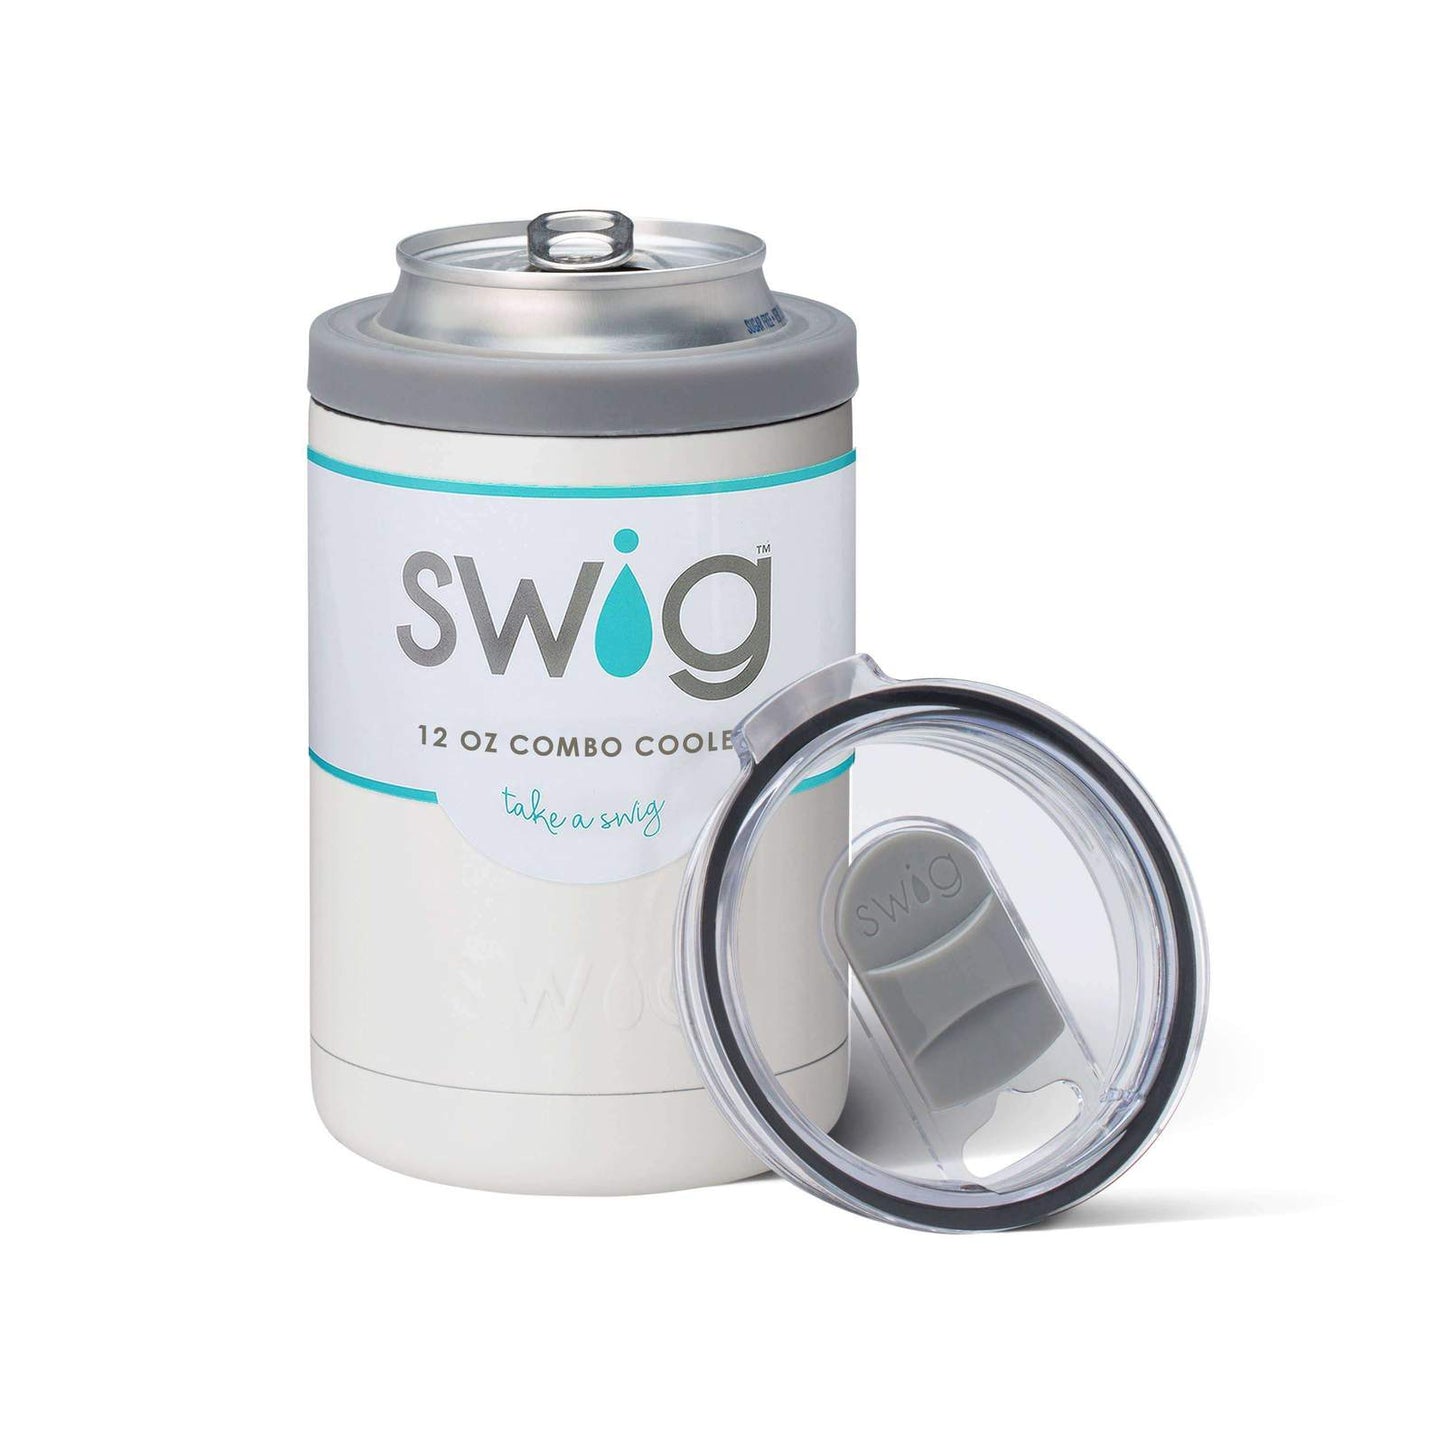 Swig 12 oz Combo Cooler- White